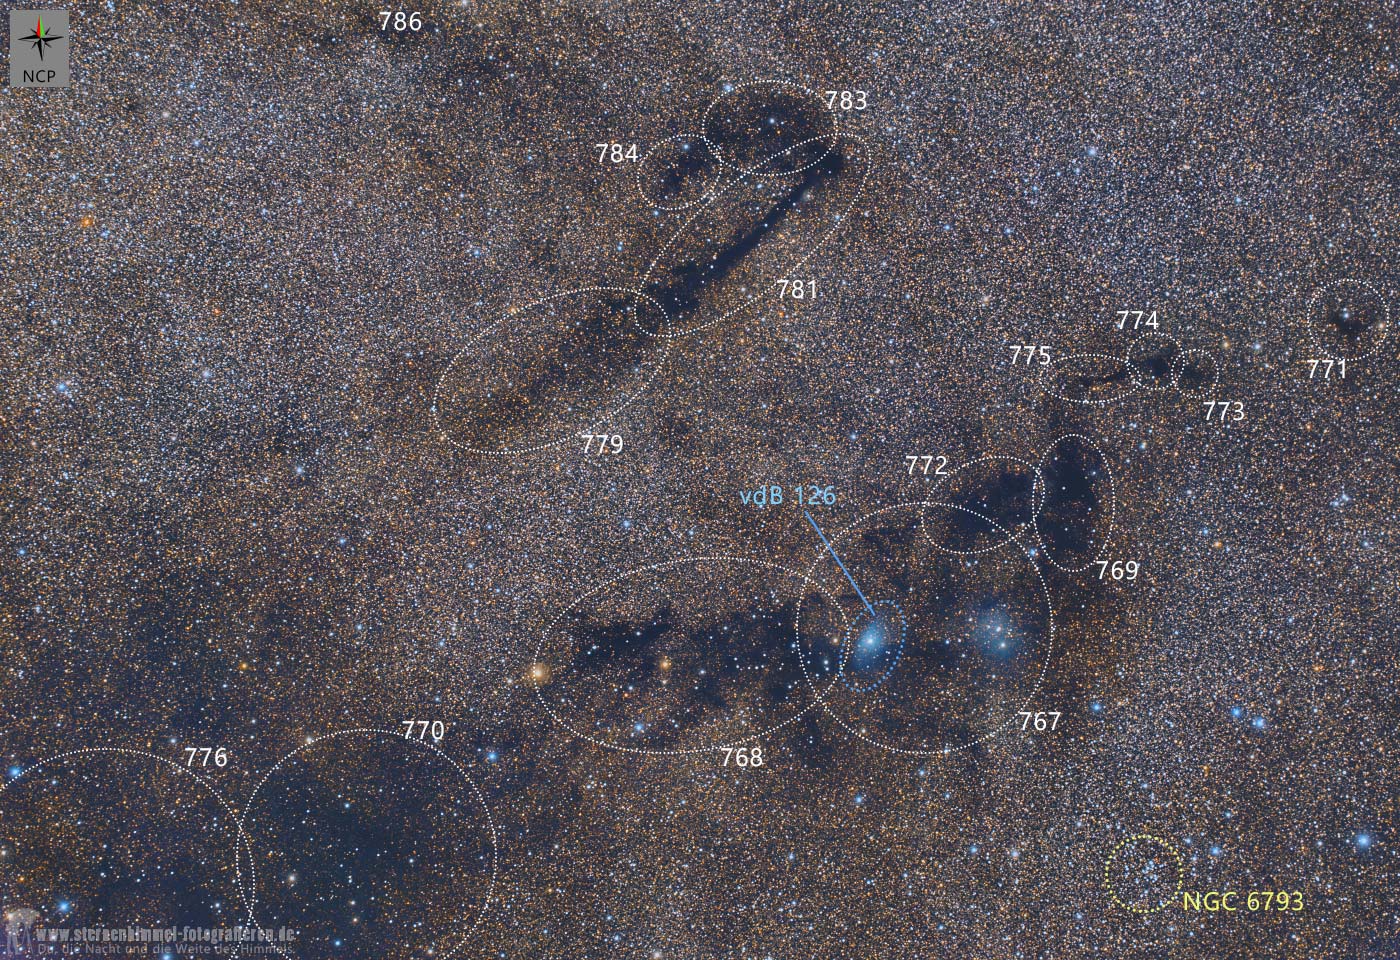 Dunkelnebel im Sternbild Füchschen, vdb 126, van den bergh 126, LDN 781, LDN 767, interstellare Materie, Dunkle Materie